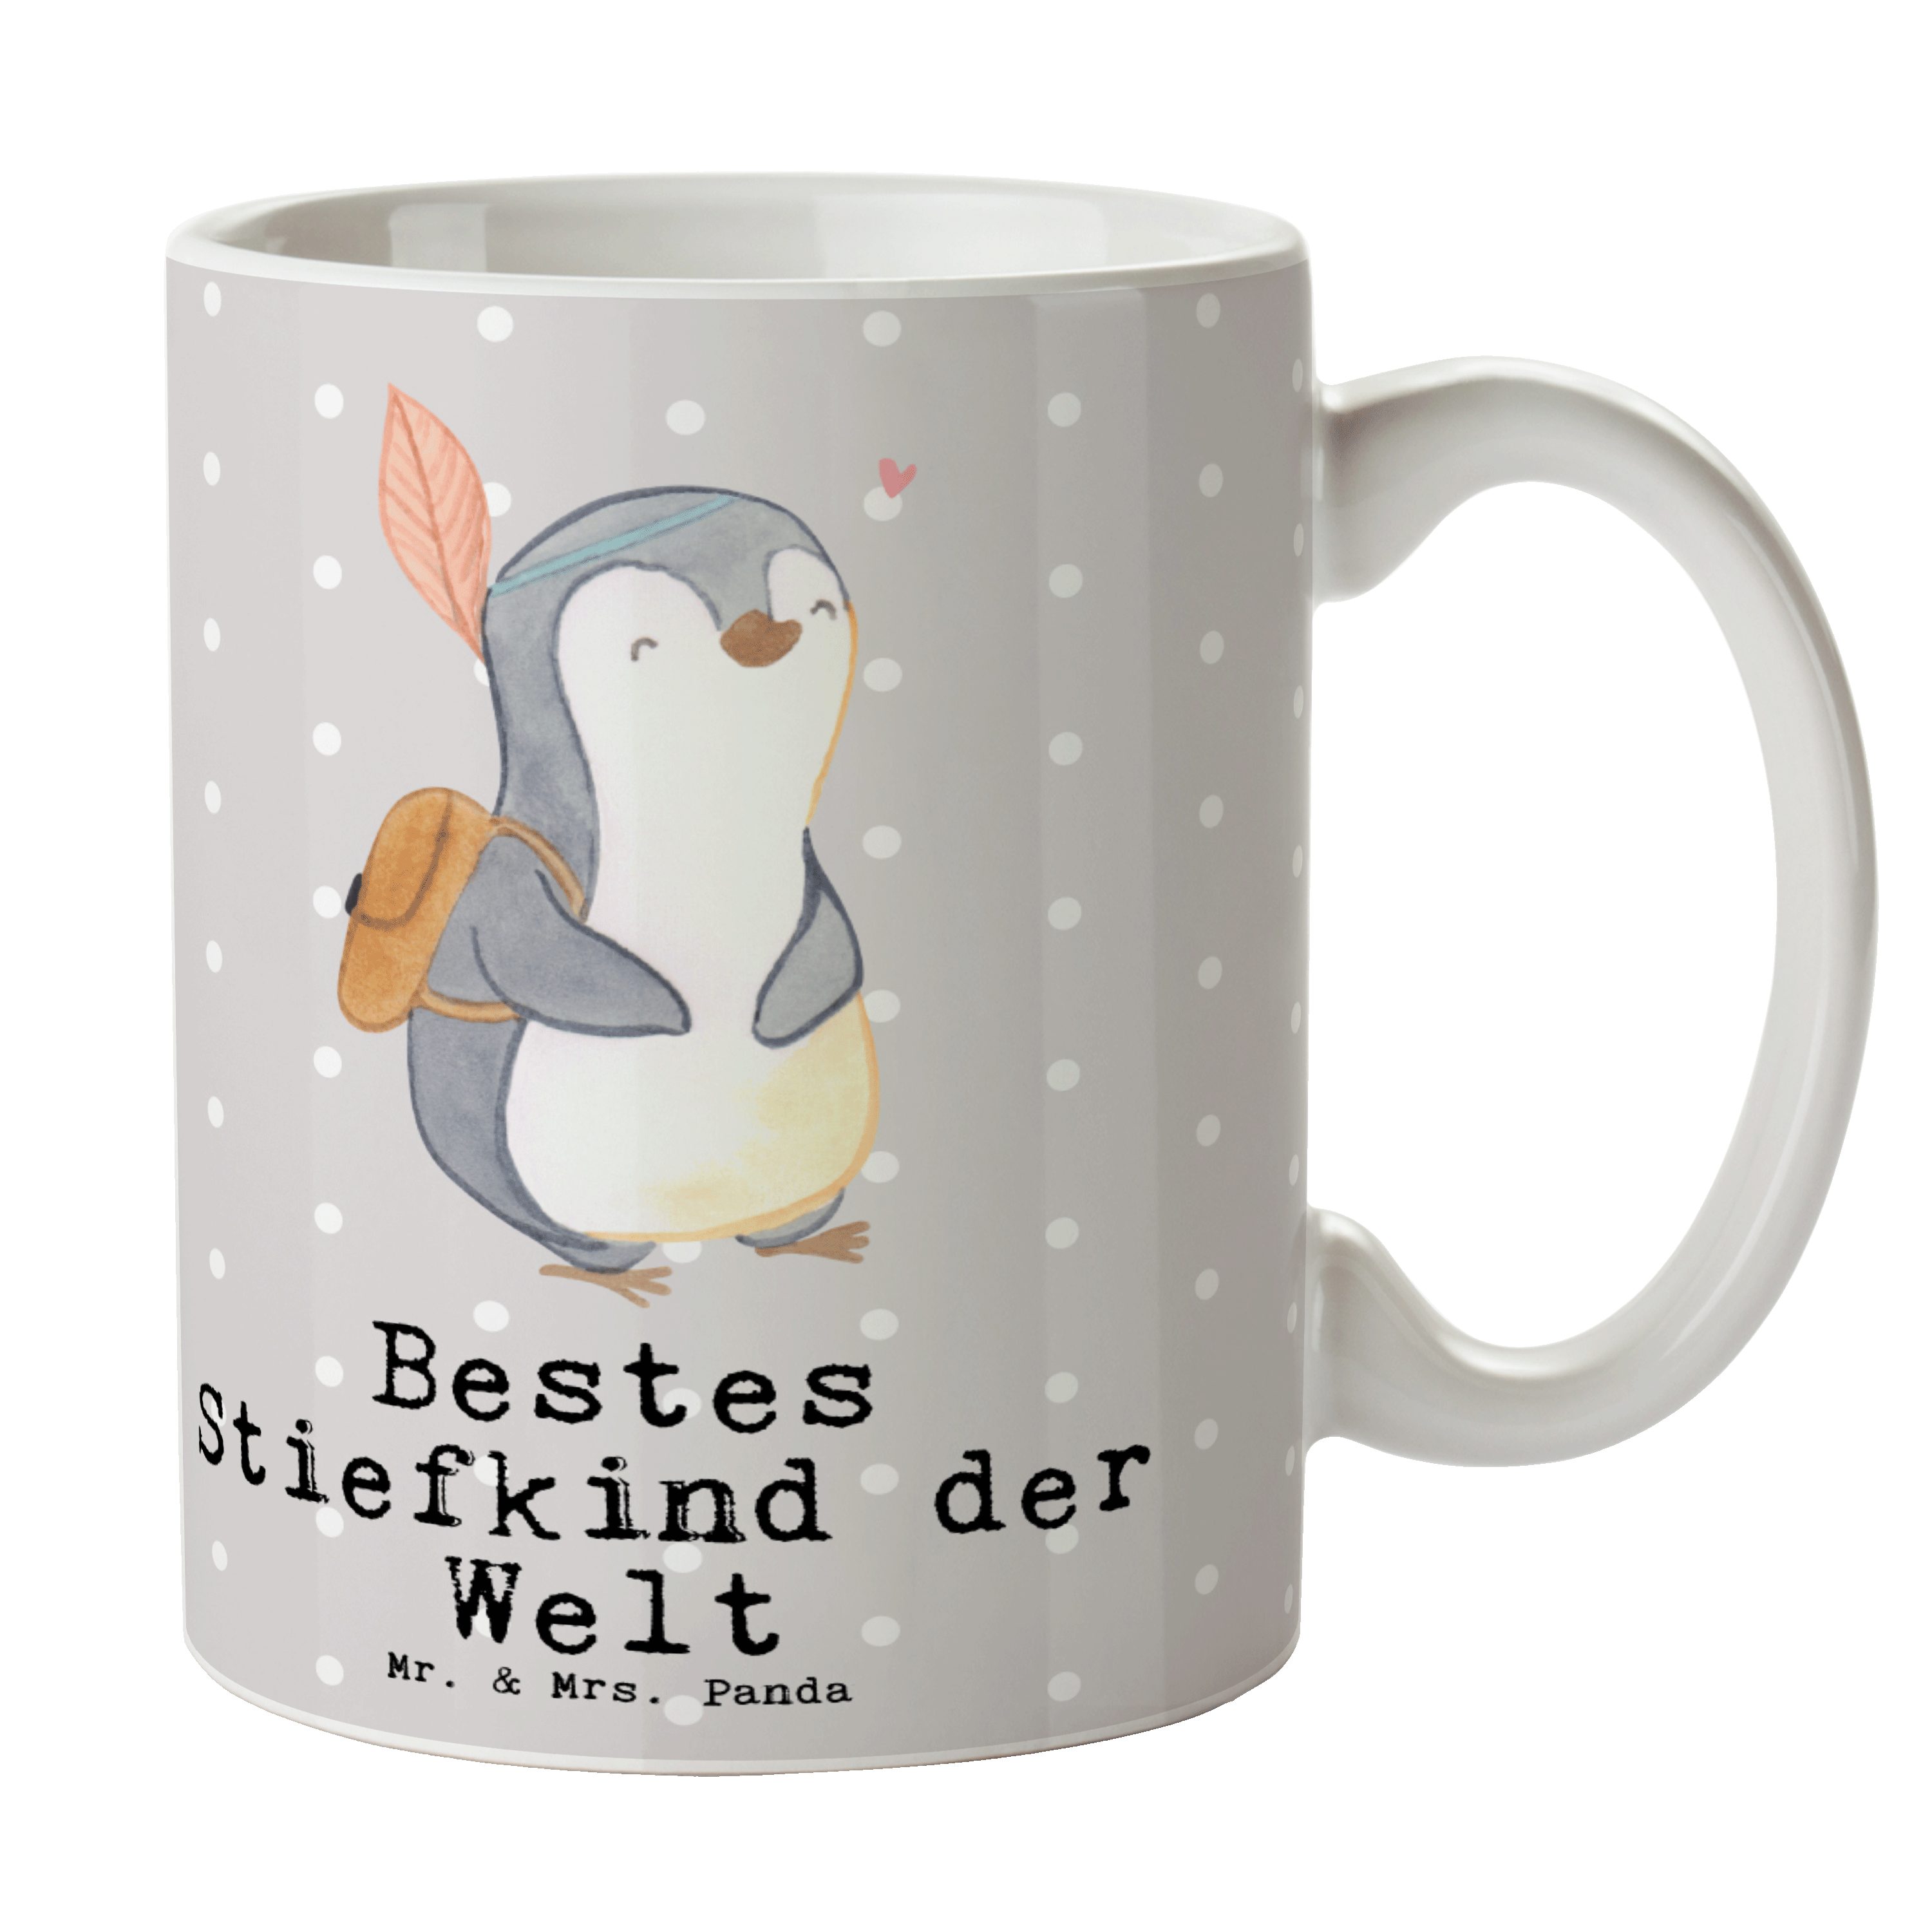 Mr. & Mrs. Panda Tasse Pinguin Bestes Stiefkind der Welt - Grau Pastell - Geschenk, Tasse, T, Keramik